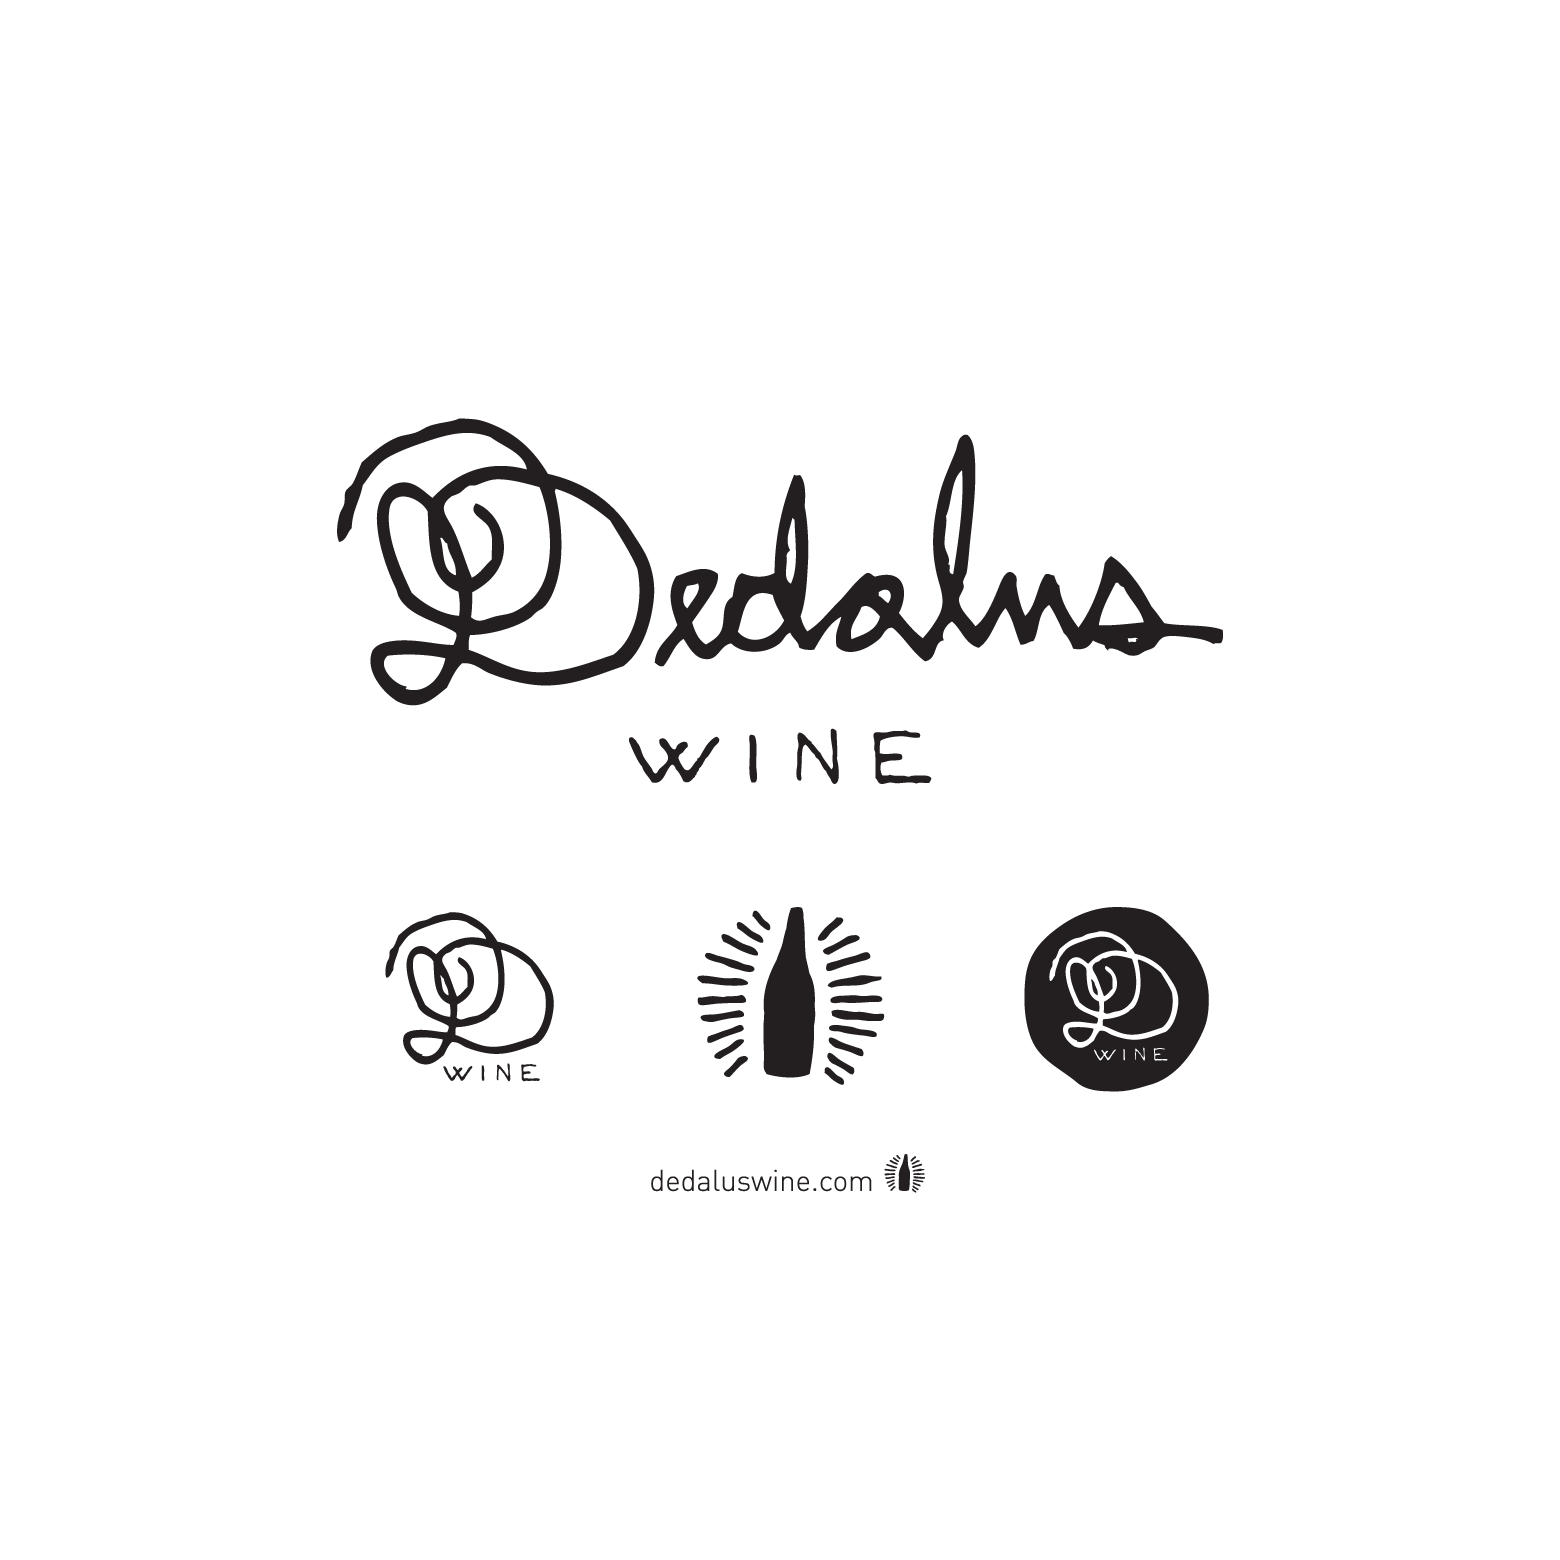 Dedalus_Logos-02_1170x780x2